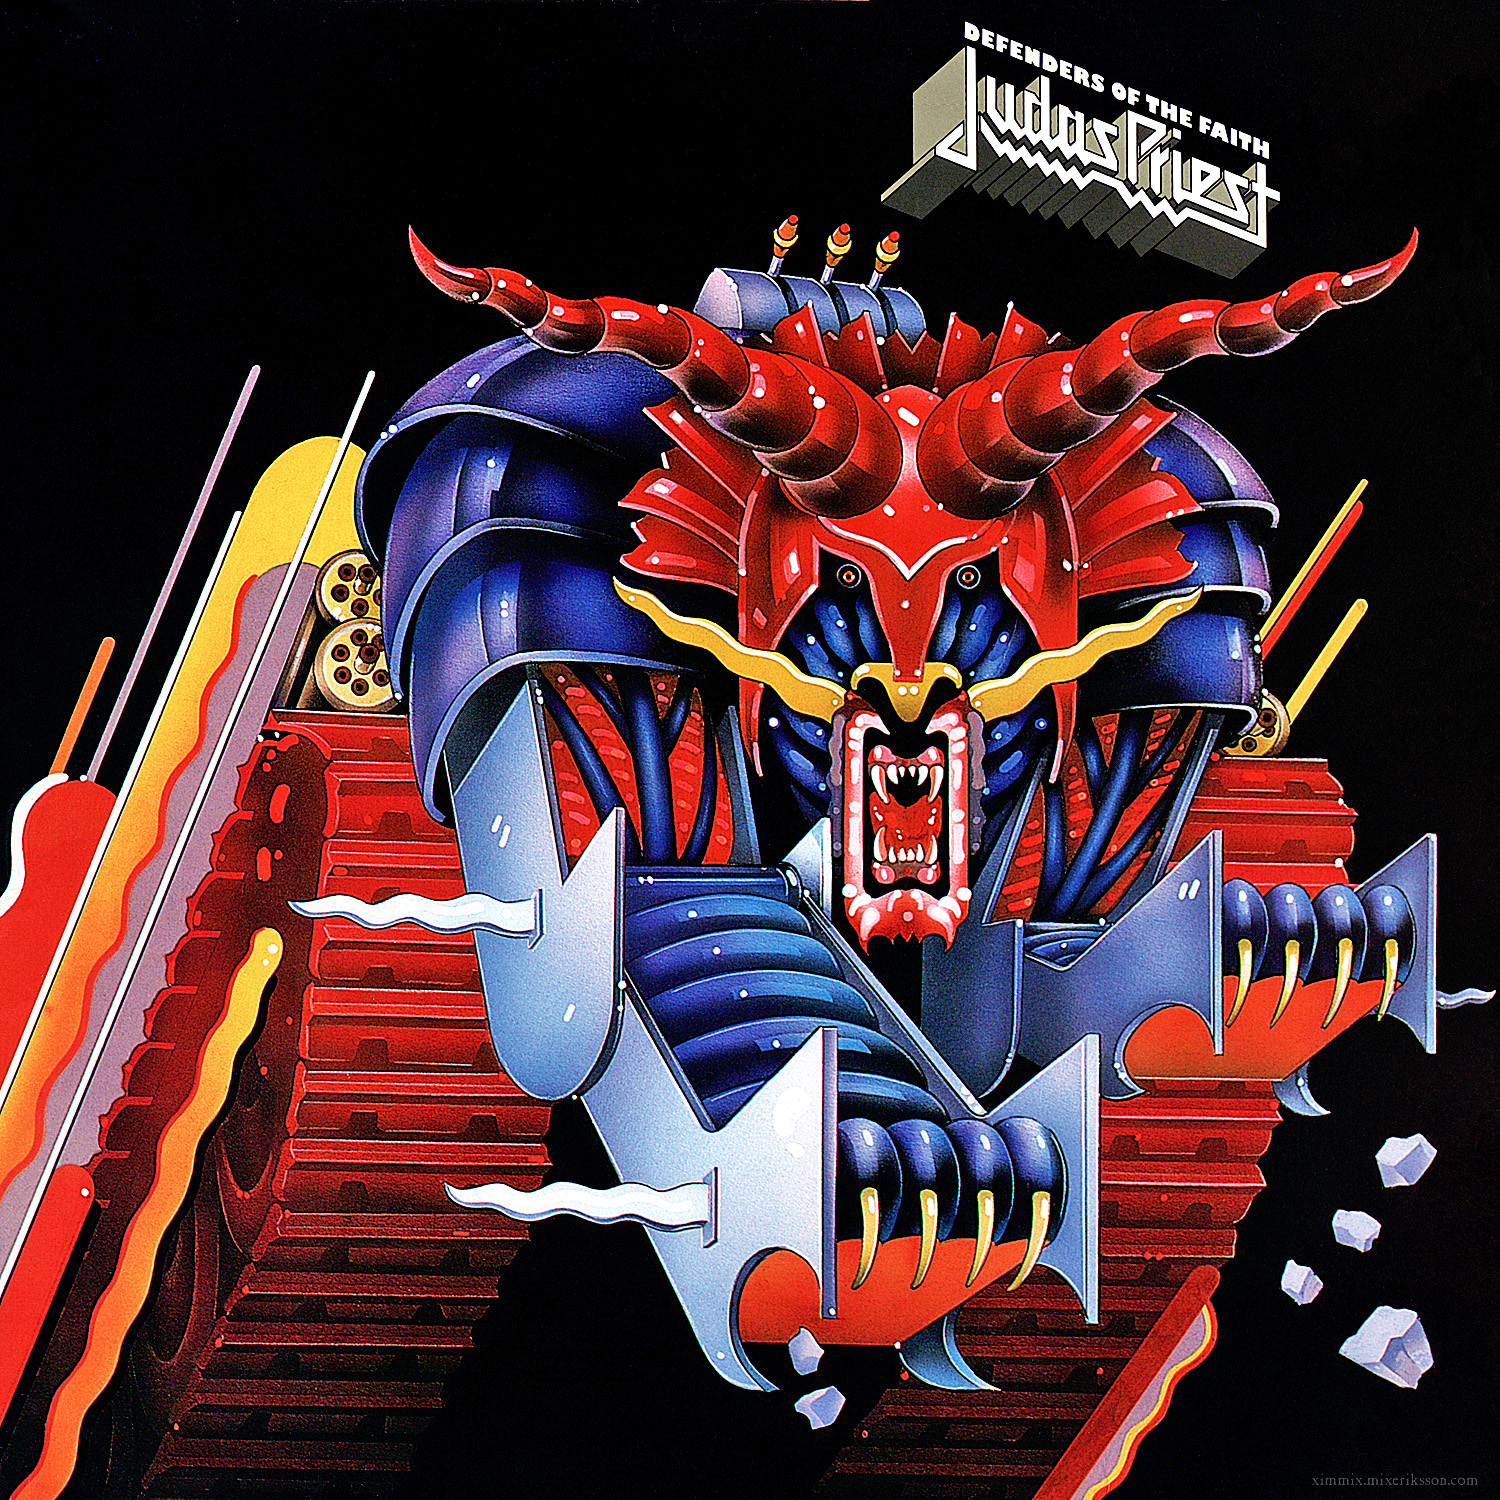 Judas Priest Defenders of the Faith cover artwork